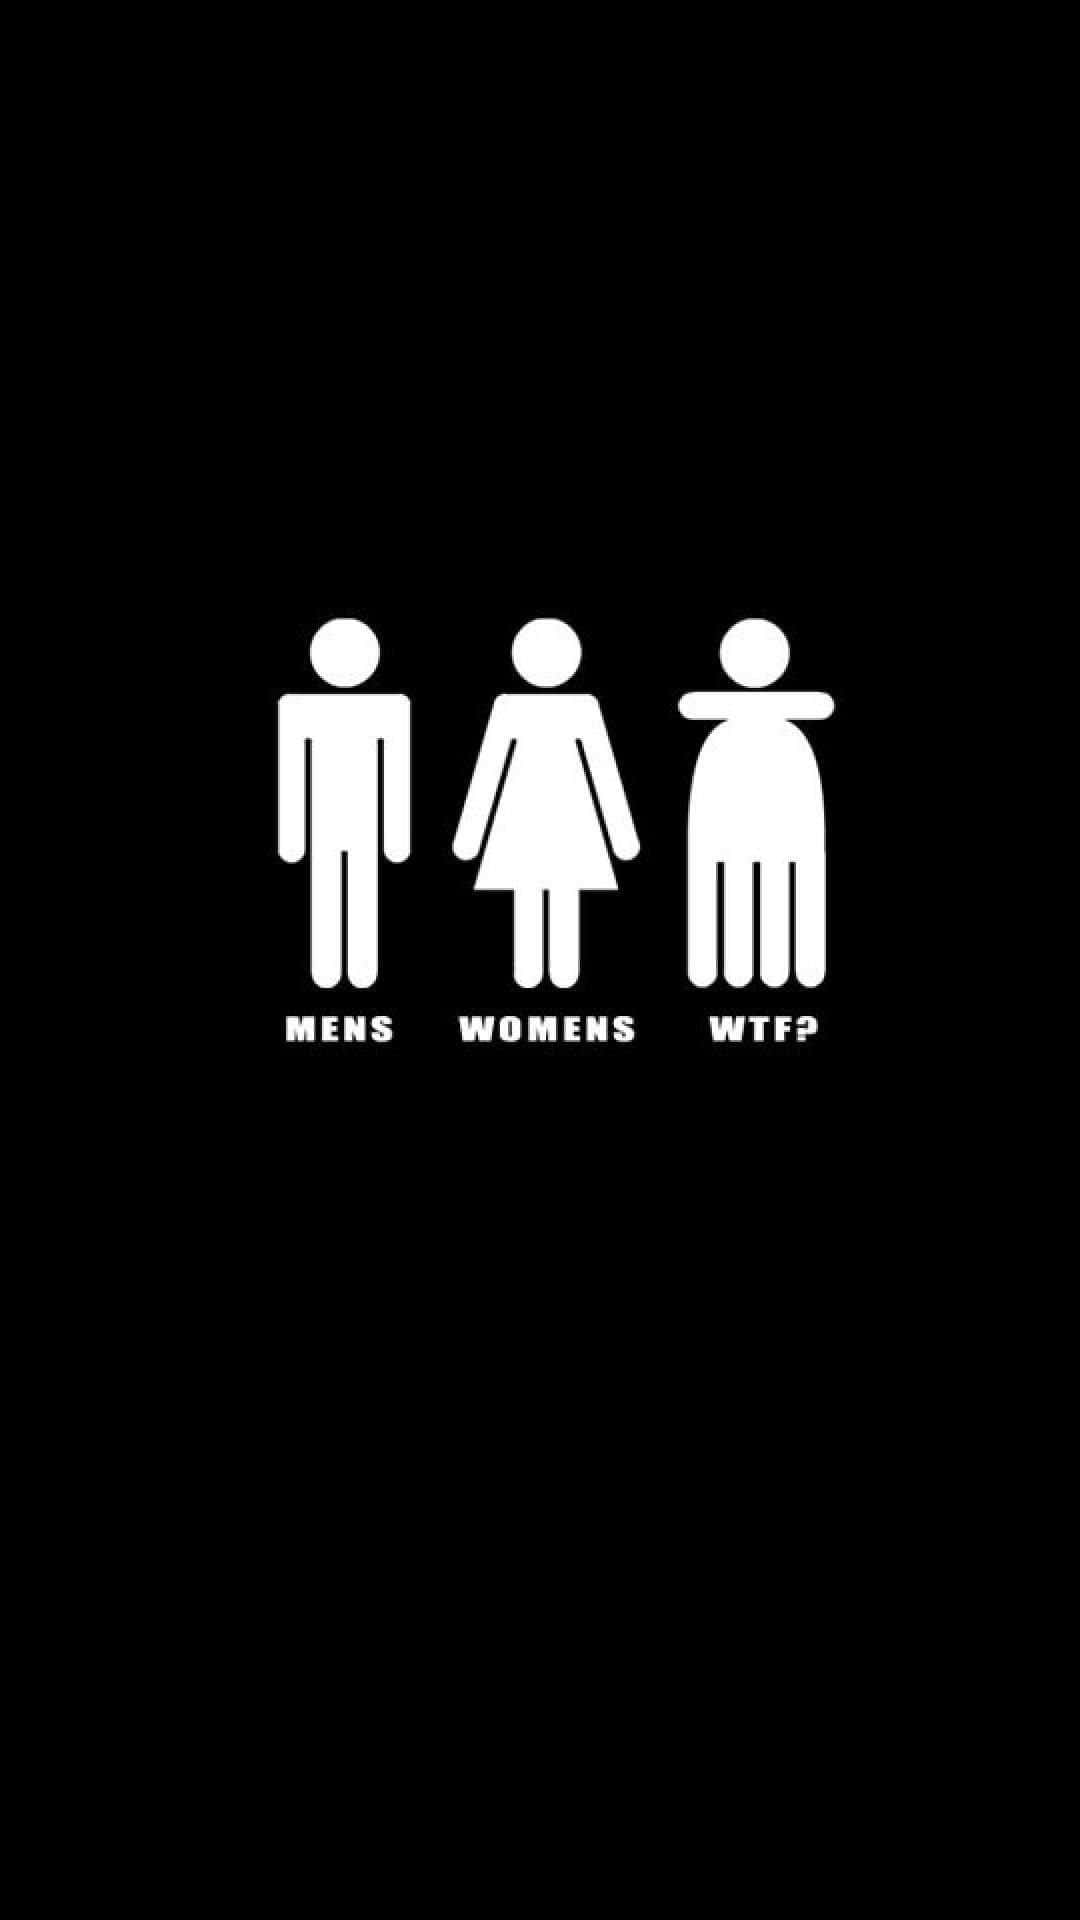 Awkward Bathroom Gender Signs